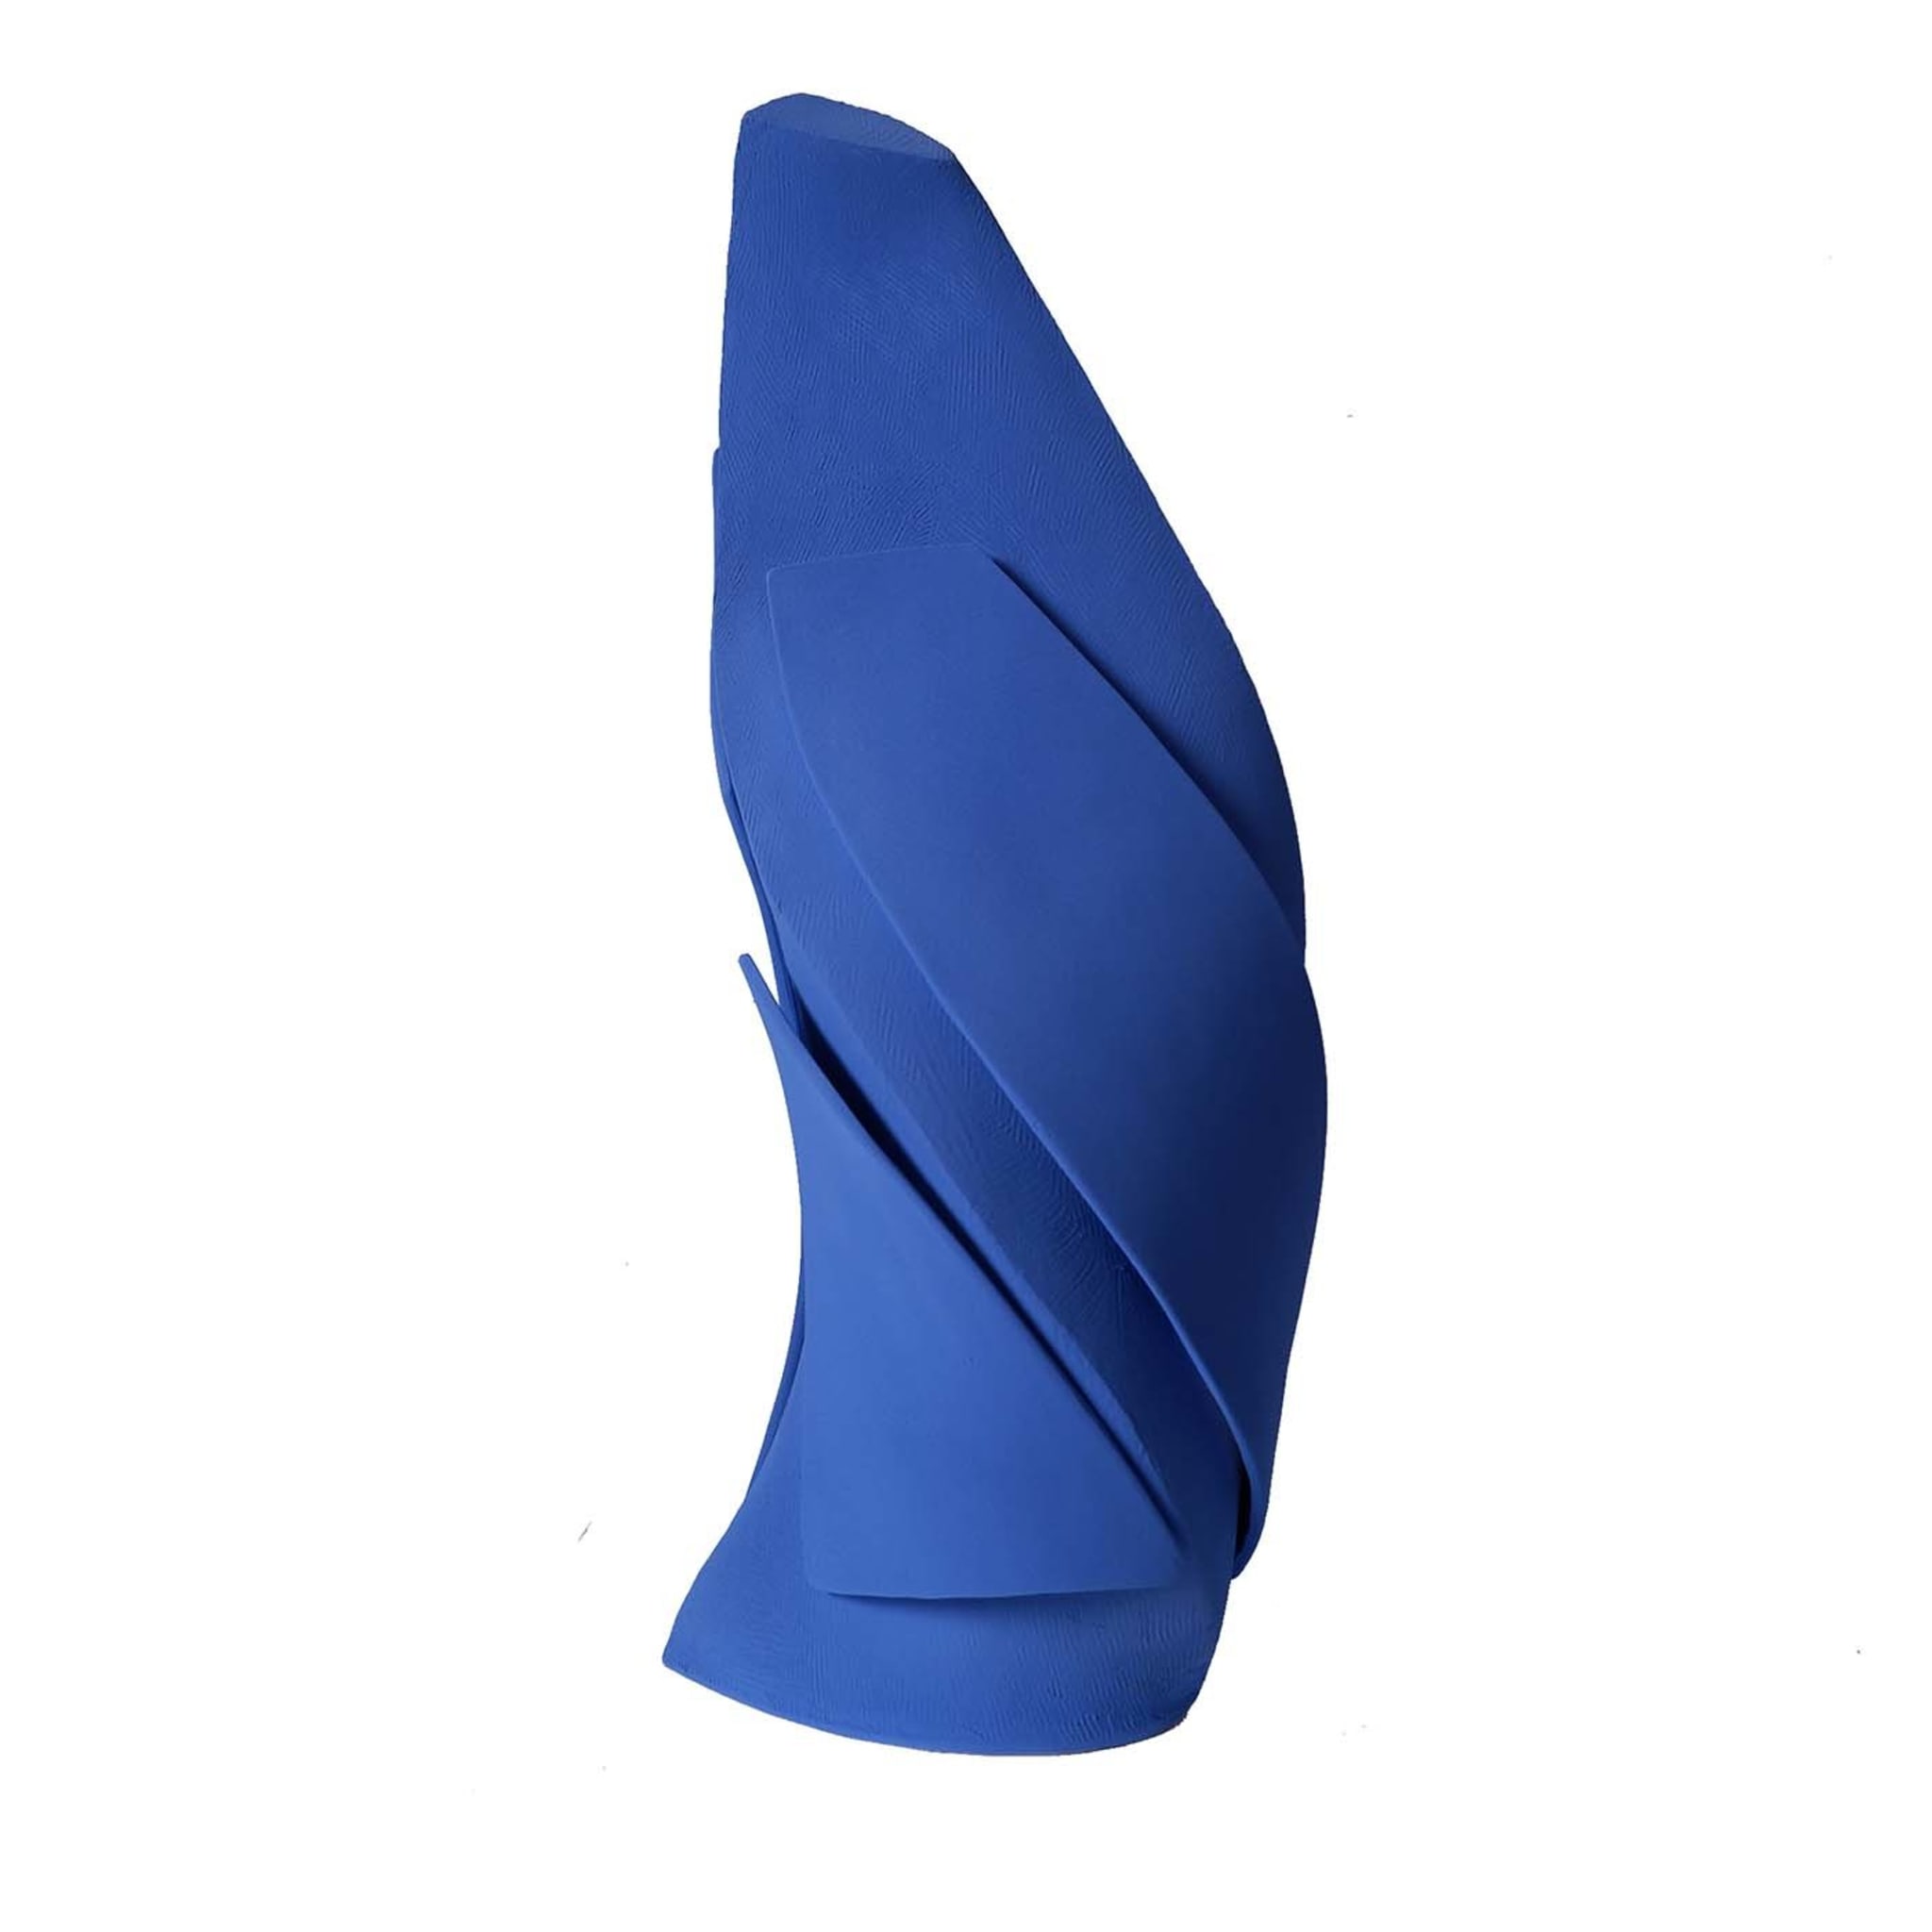 Blaue Demeter-Vase #1 - Hauptansicht